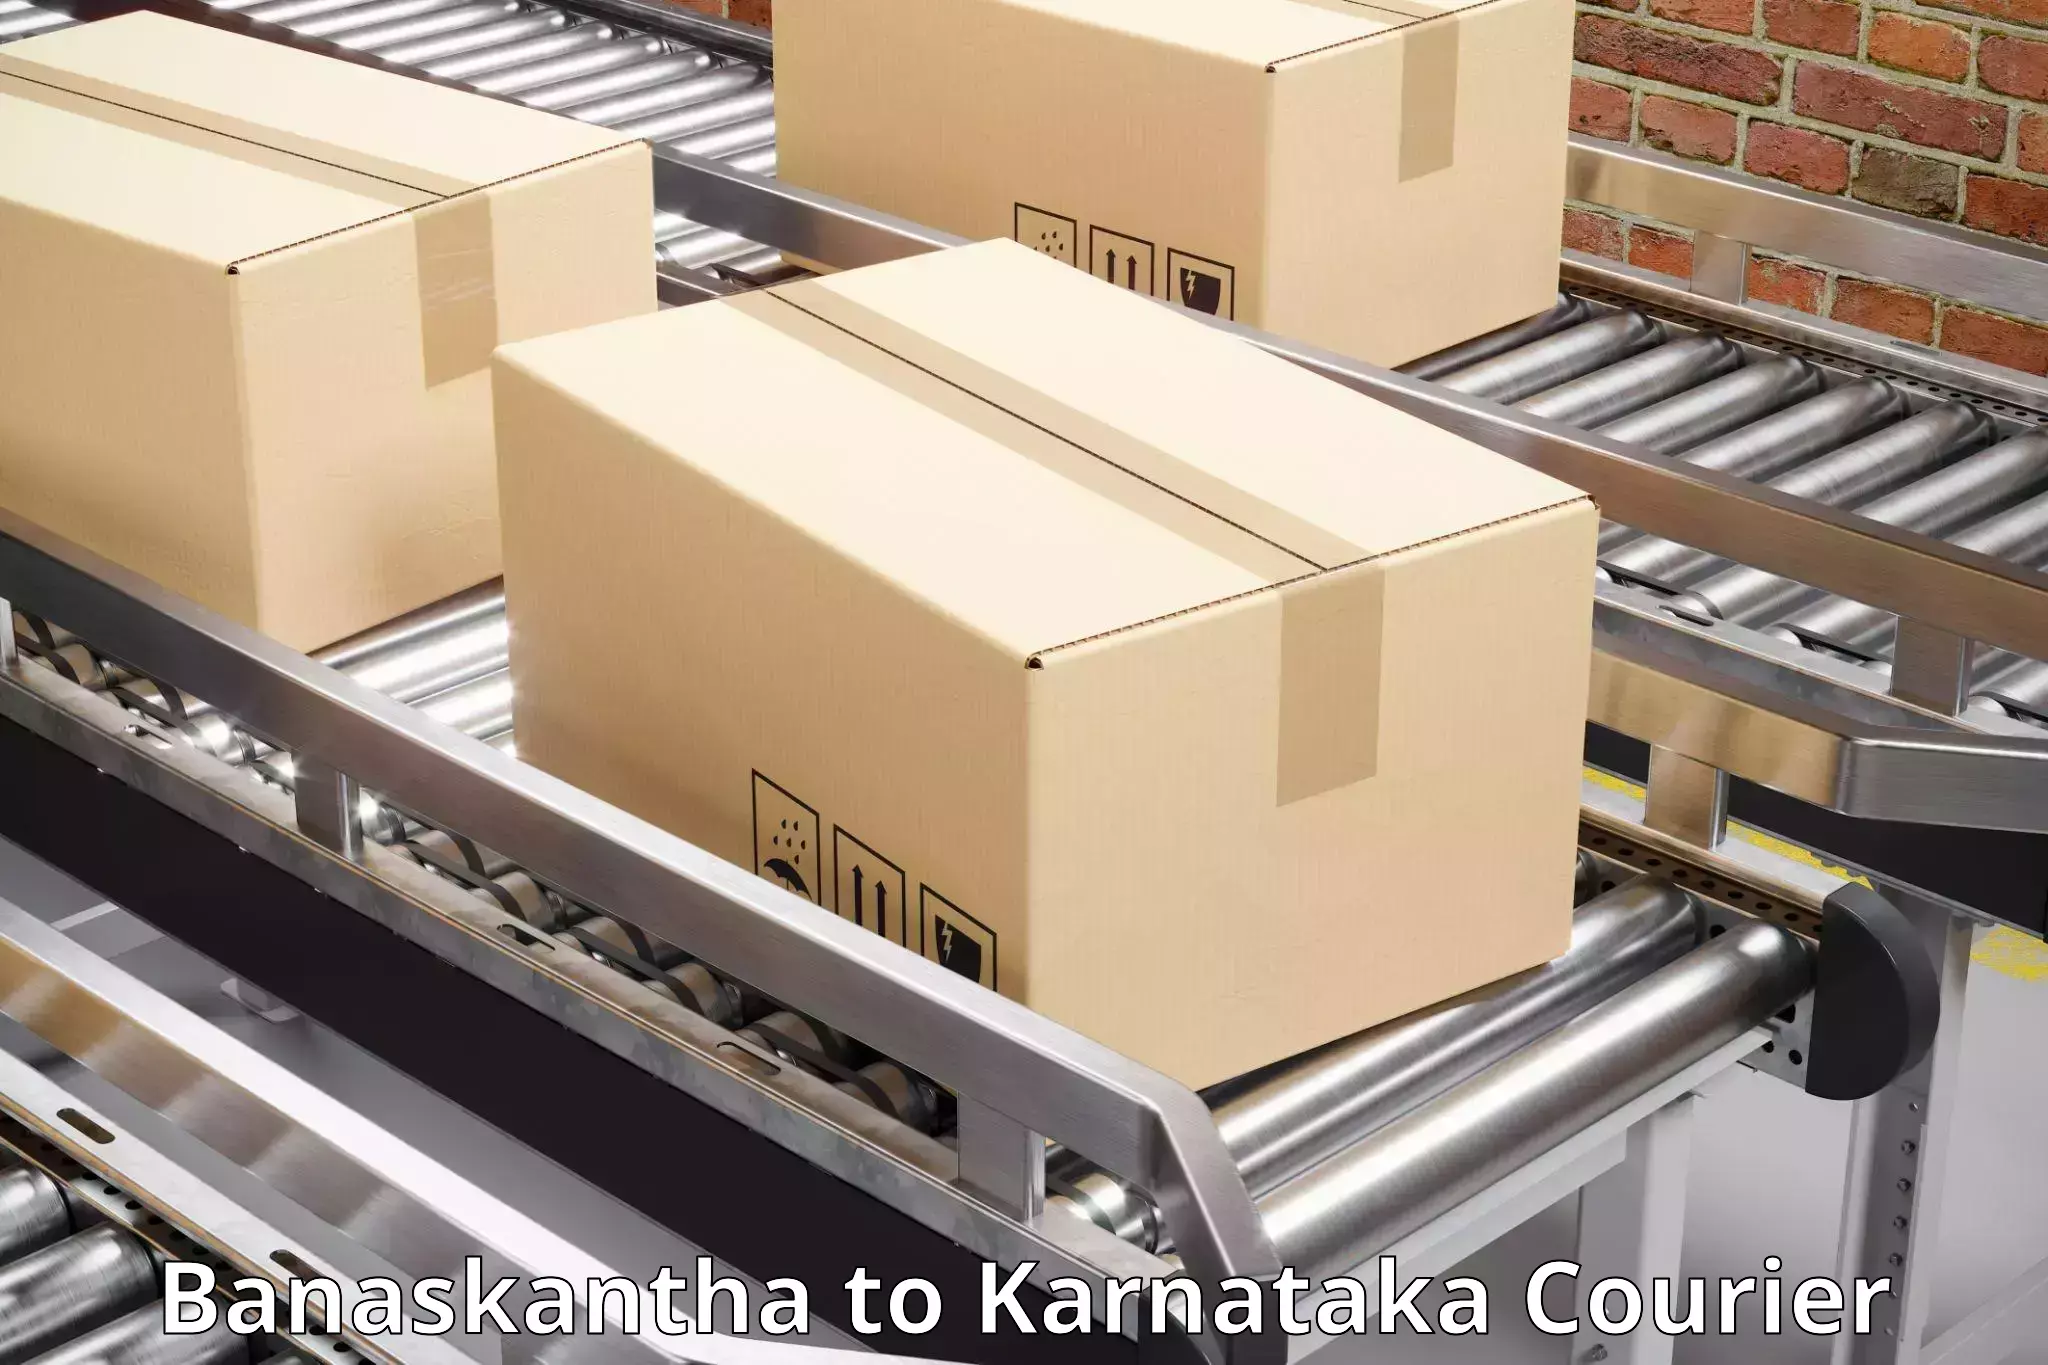 Professional courier handling Banaskantha to Ramanathapura